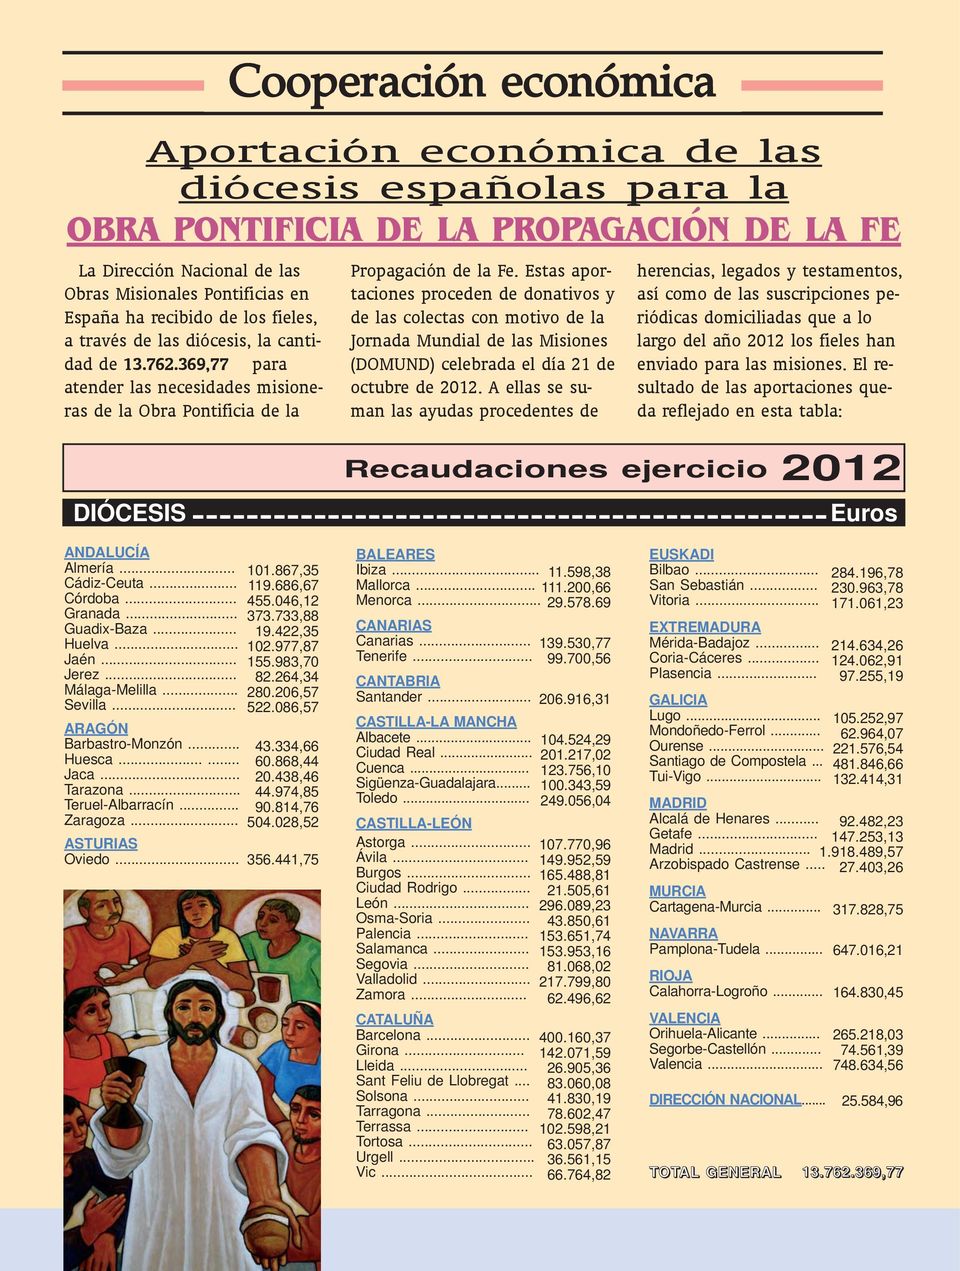 Propagación de la Fe. Estas aportaciones proceden de donativos y de las colectas con motivo de la Jornada Mundial de las Misiones (DOMUND) celebrada el día 21 de octubre de 2012.